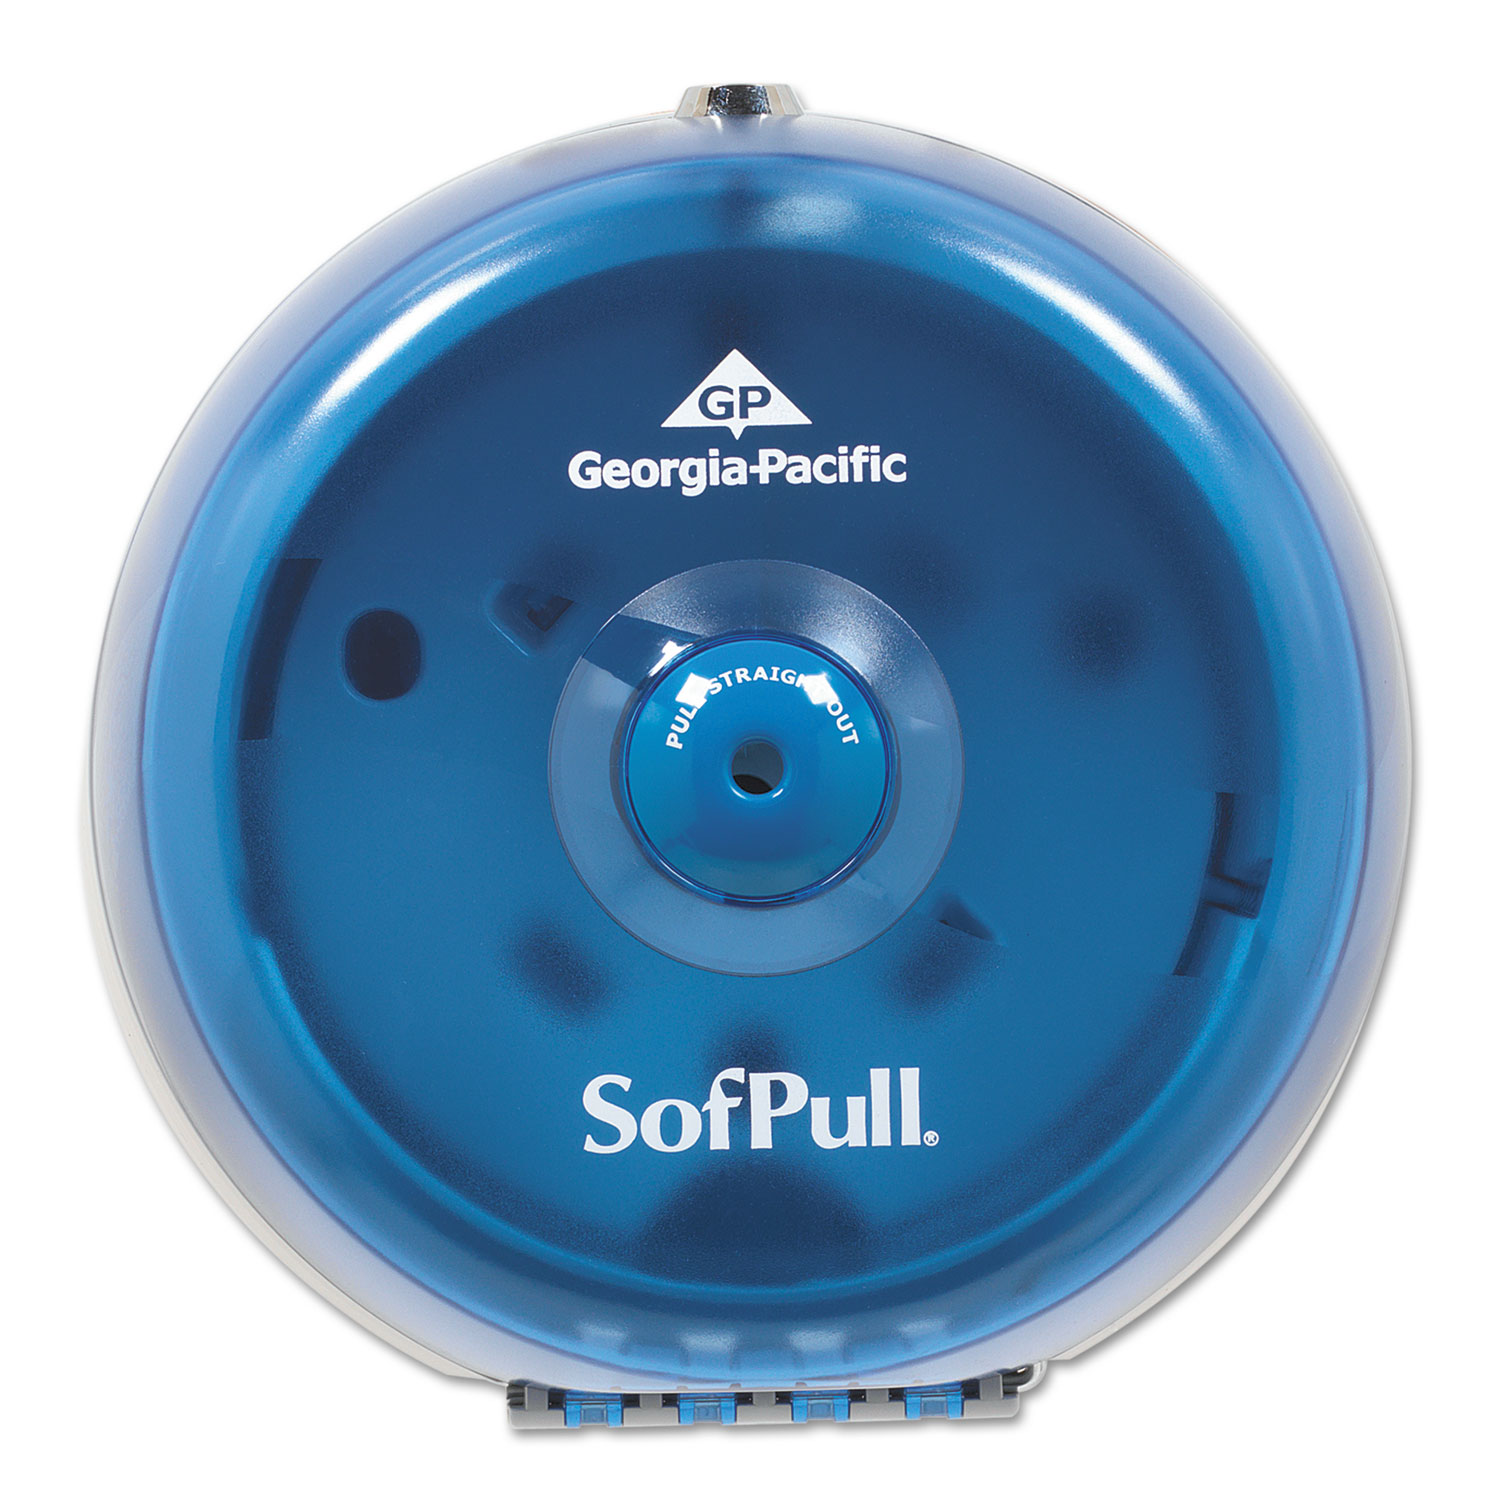  Georgia Pacific Professional 56514 SofPull Mini Centerpull Single-Roll Bath Tissue Dispenser, 8.75 x 7 x 9, Blue (GPC56514) 